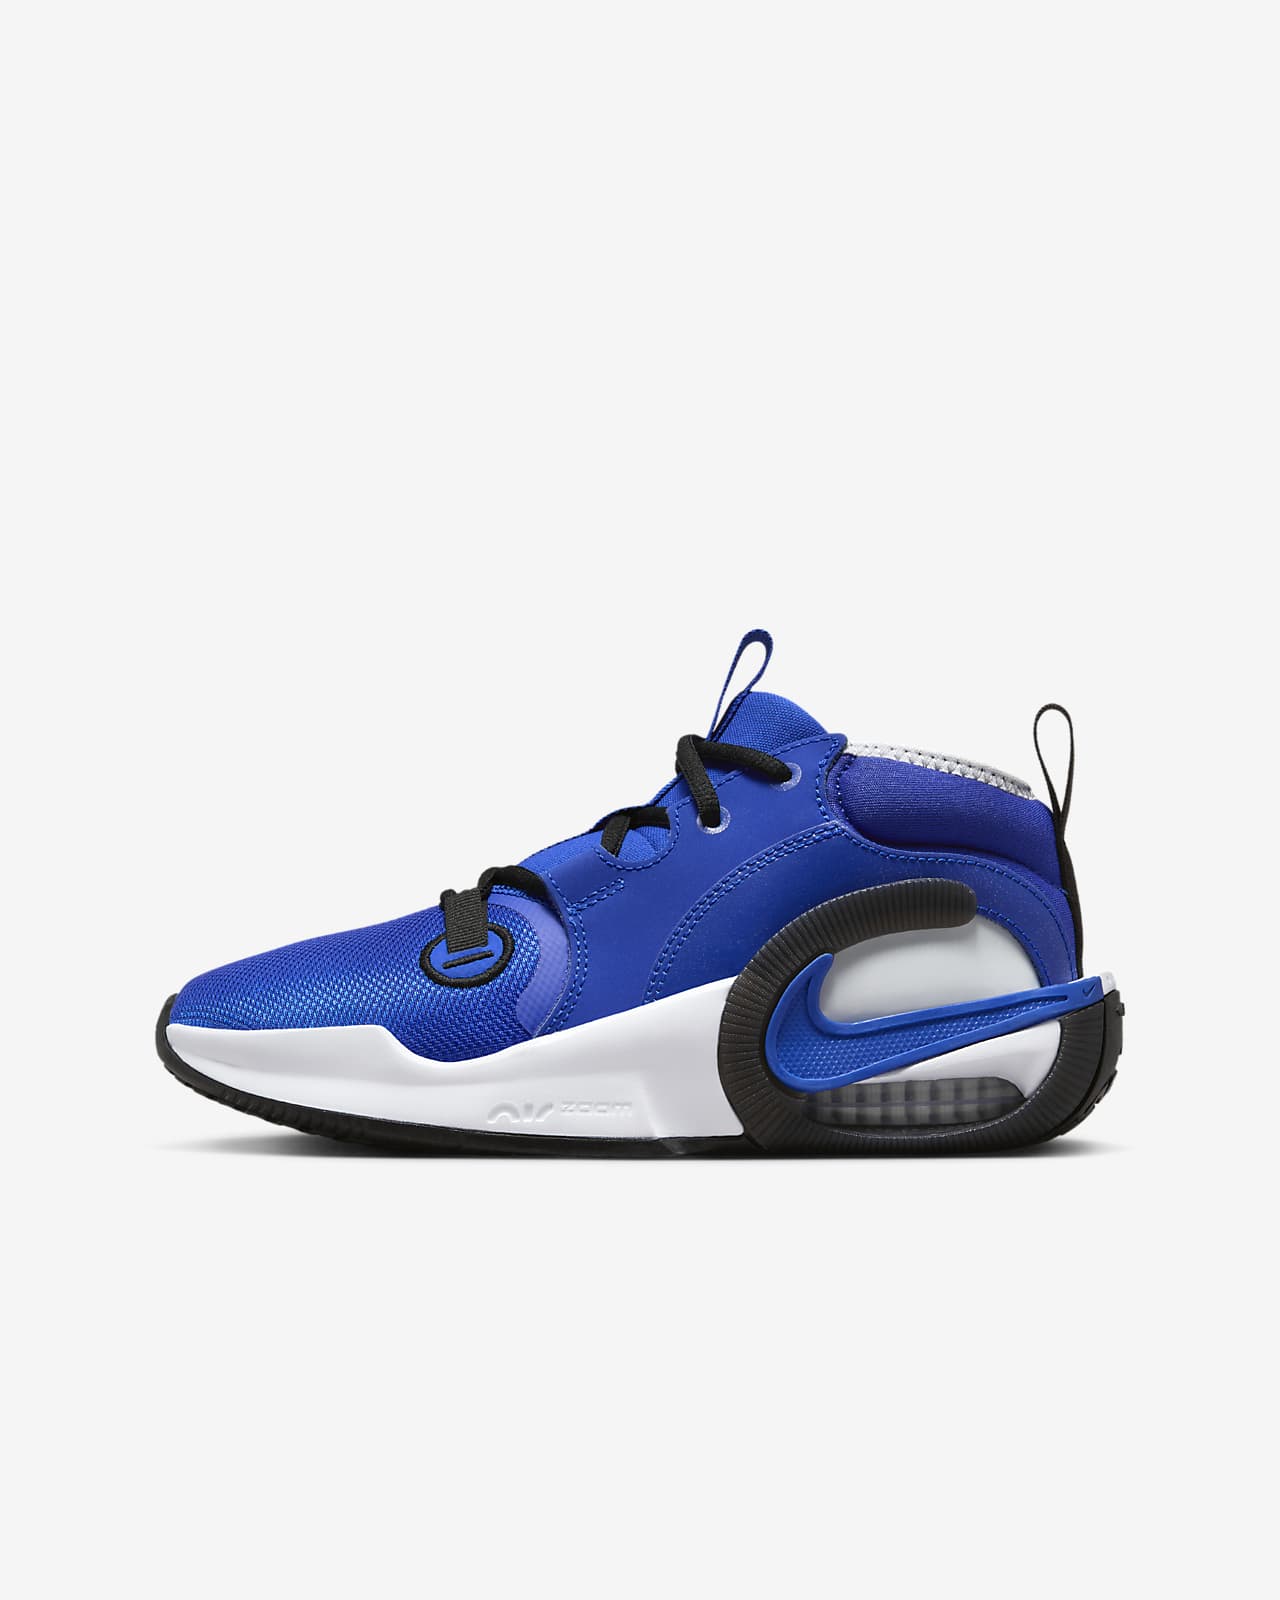 Chaussure de basket Nike Air Zoom Crossover 2 pour ado